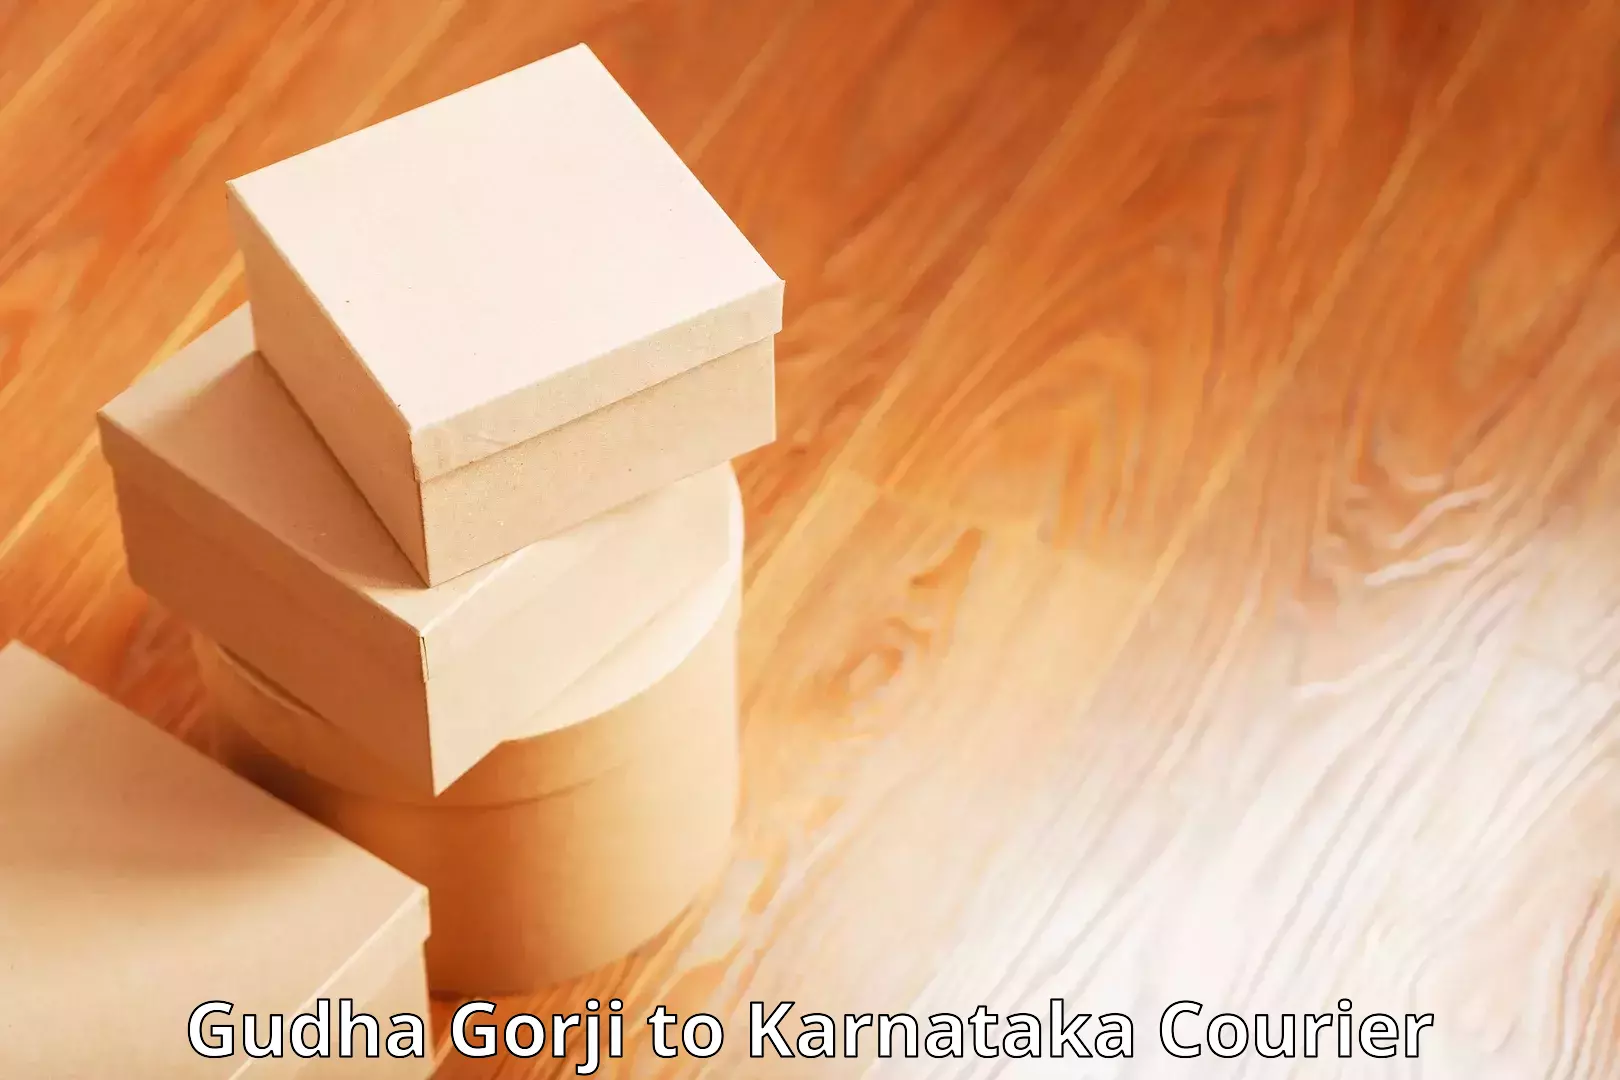 Subscription-based courier Gudha Gorji to Srirangapatna